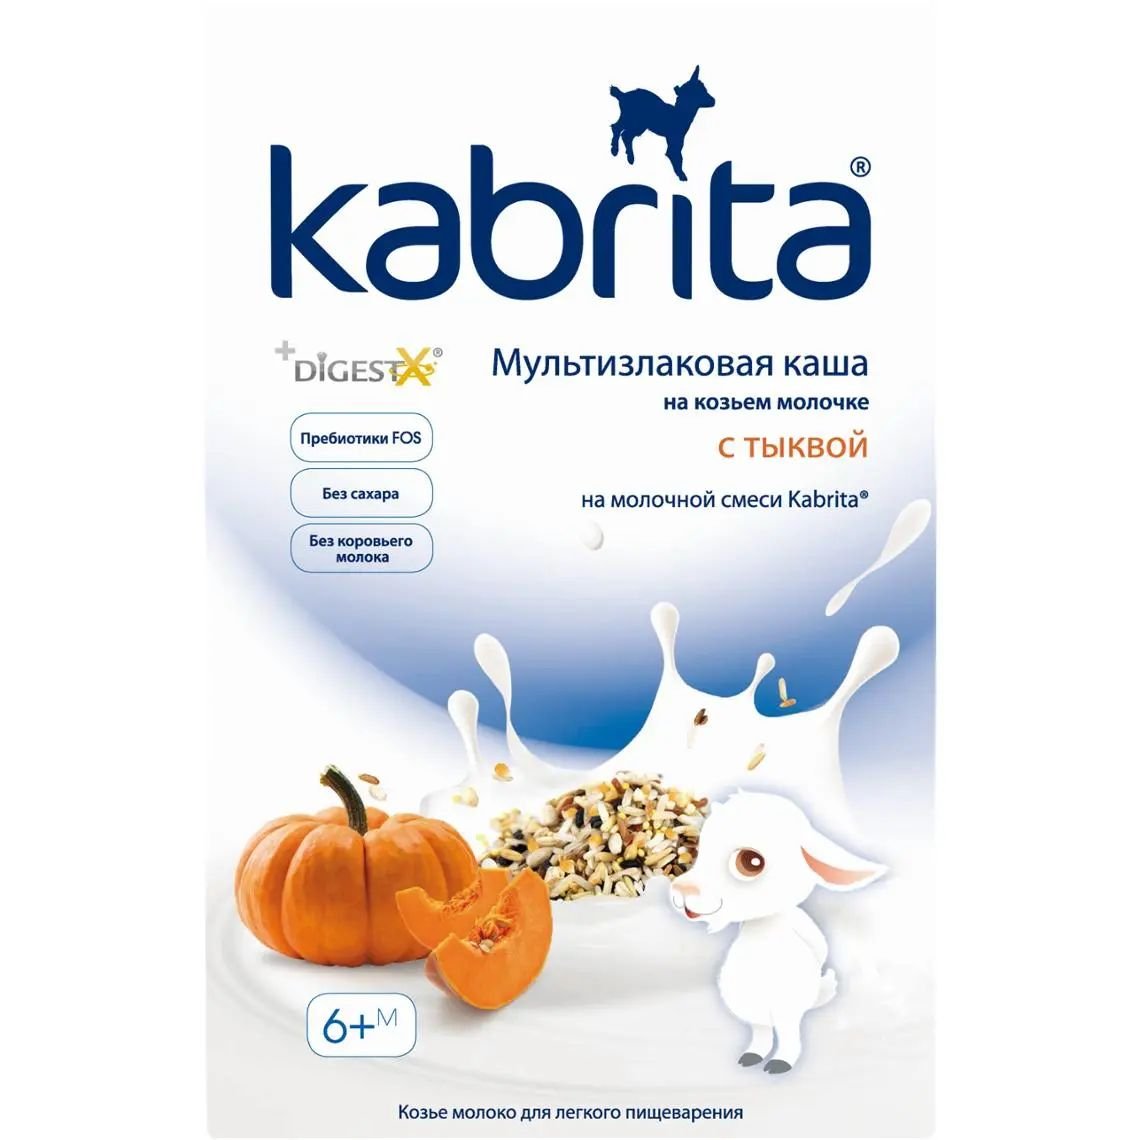 Каша Kabrita Мультизлаковая с тыквой на козьем молоке 180 г - фото 1